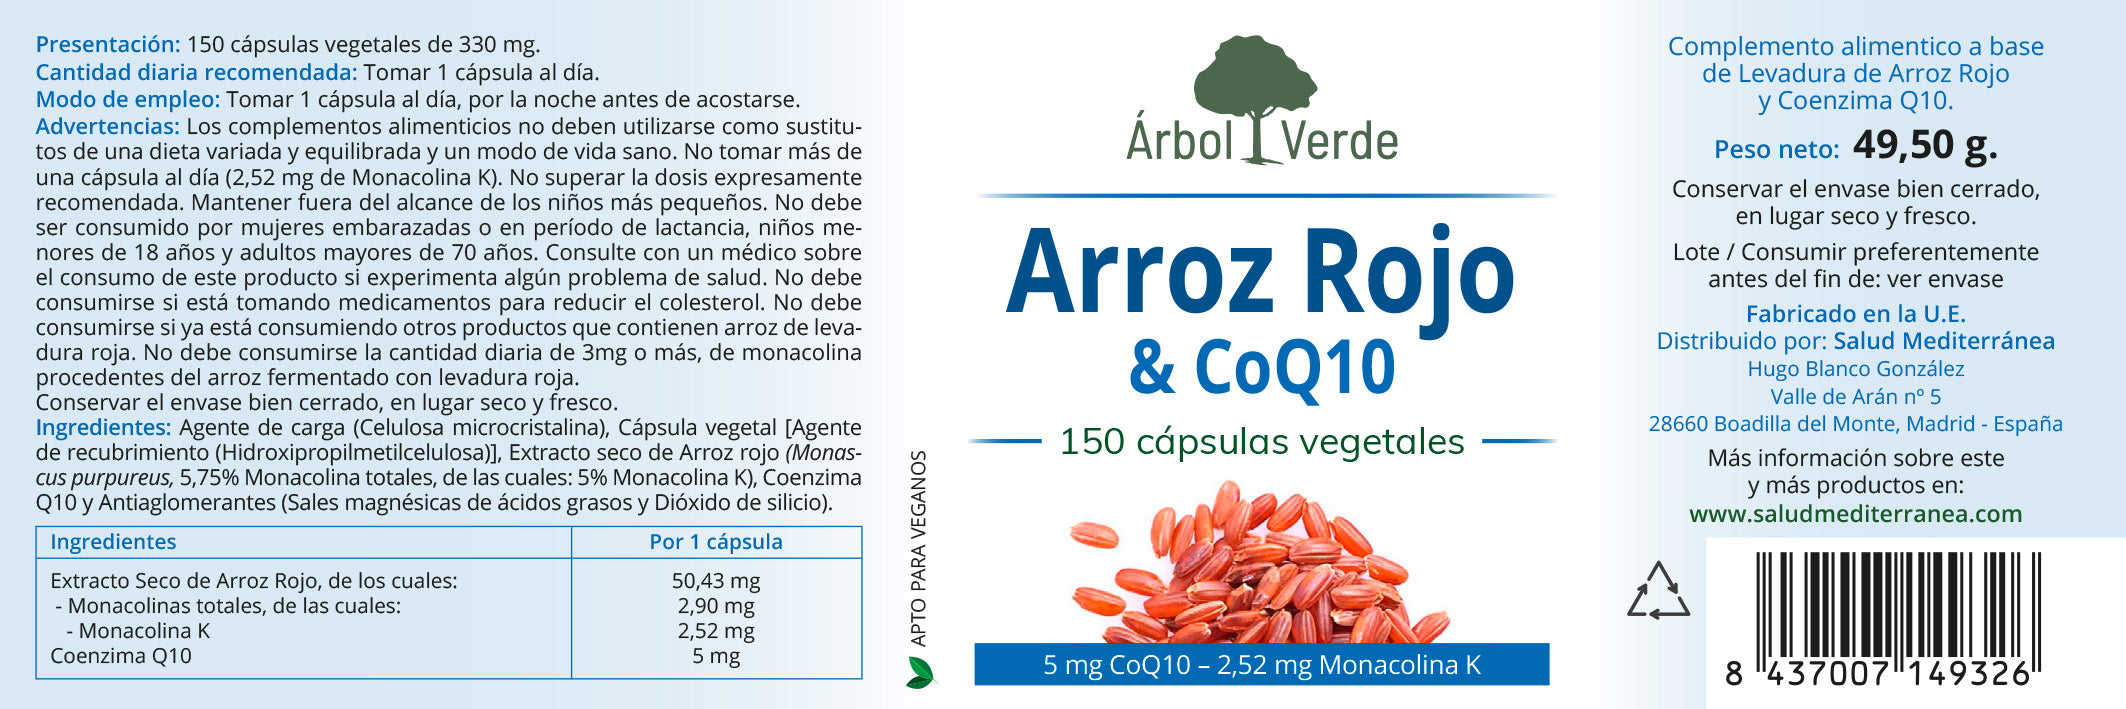 (Levadura de) Arroz Rojo con CoQ10 - 150 Capsulas. Arbol Verde